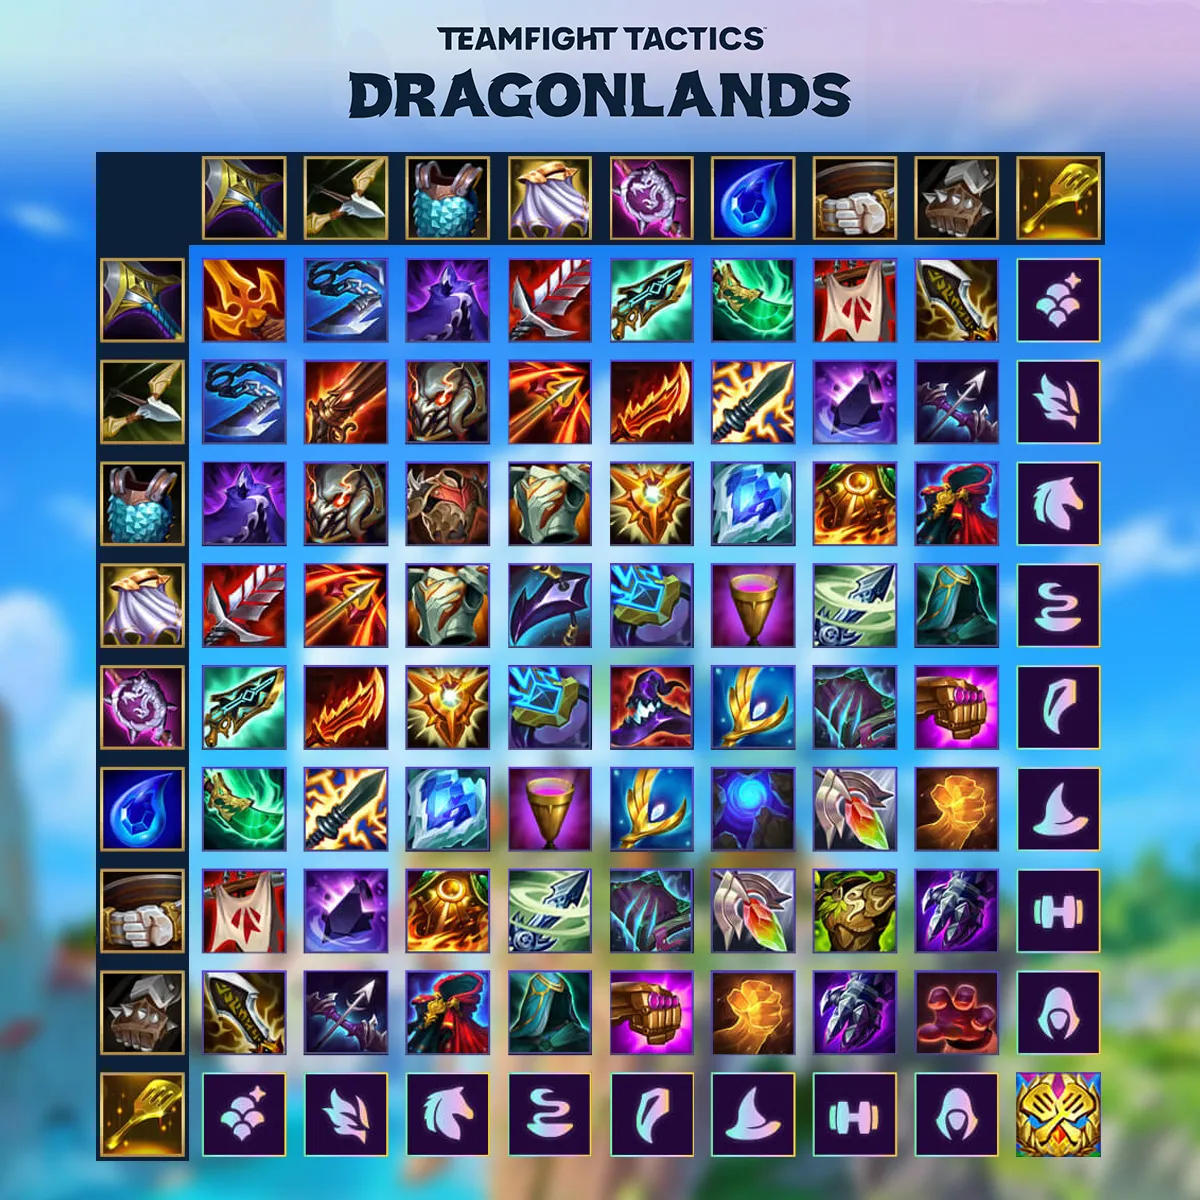 TFT set 7 Dragonlands: Astral trait guide